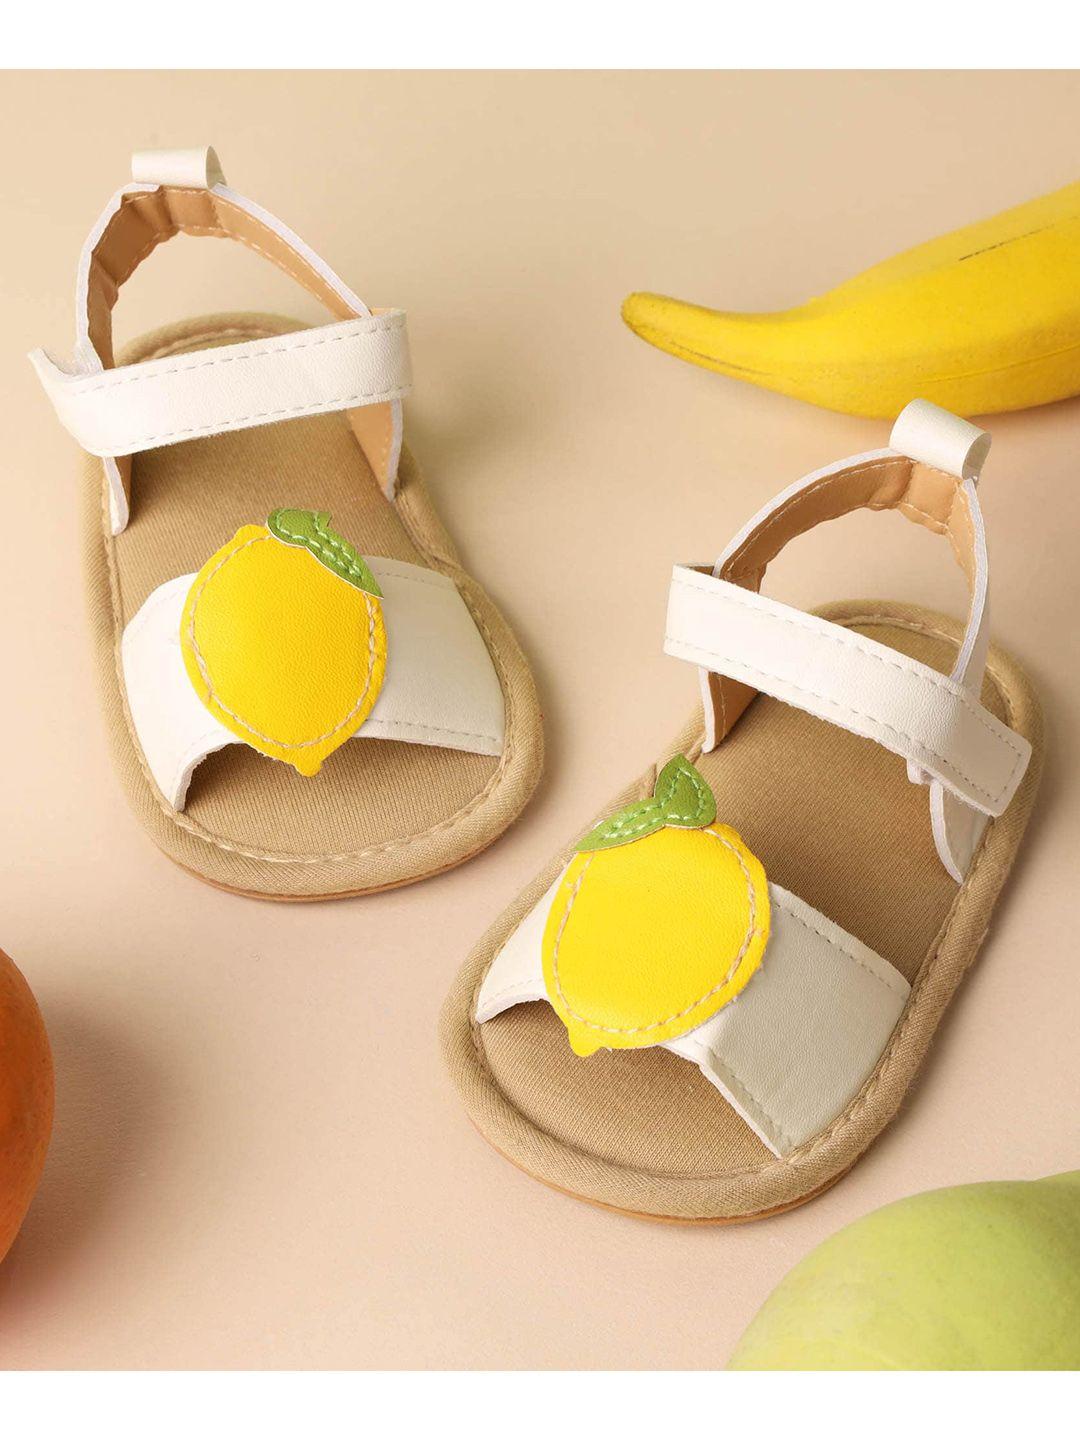 kicks & crawl girls white & yellow comfort sandals